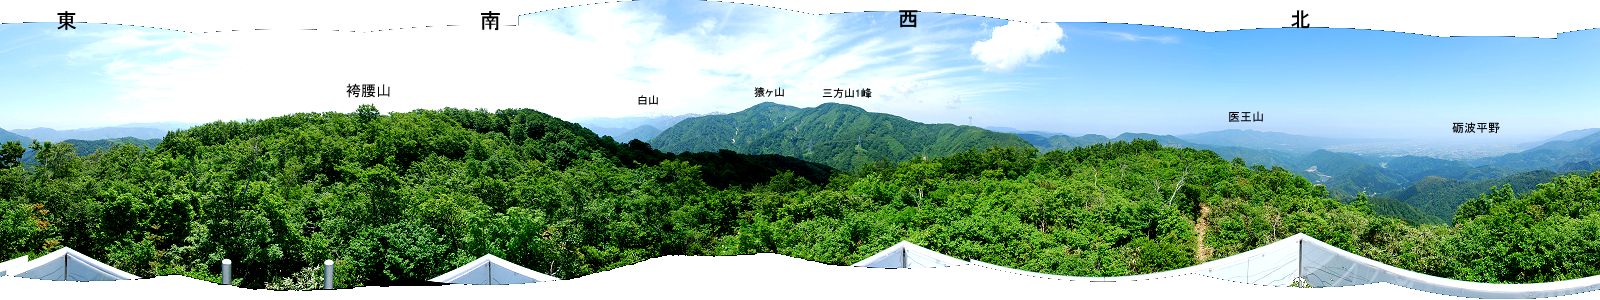 袴腰山展望櫓から眺めた360度パノラマ